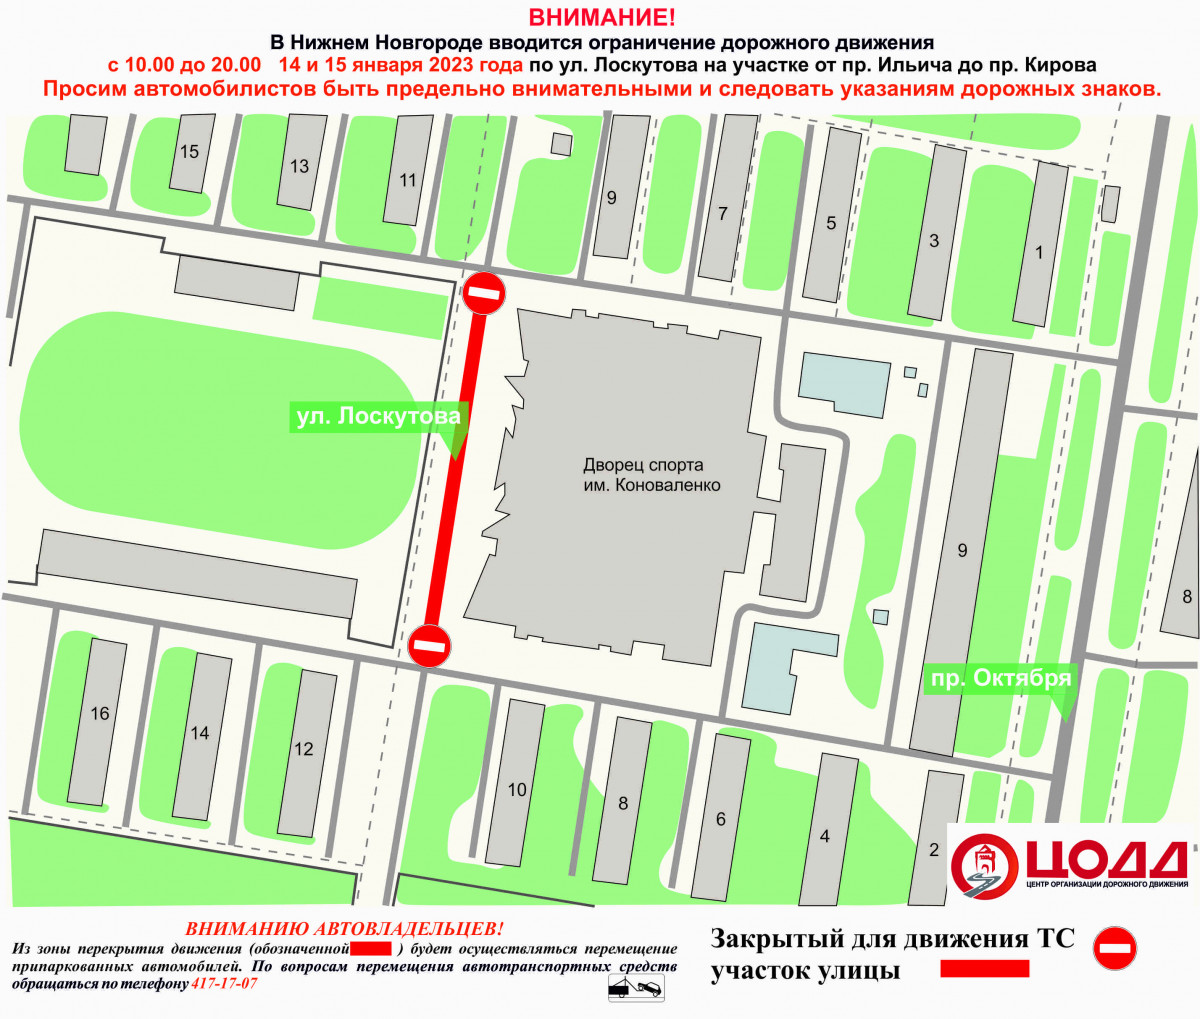 Движение транспорта приостановят на улице Лоскутова 14 и 15 января